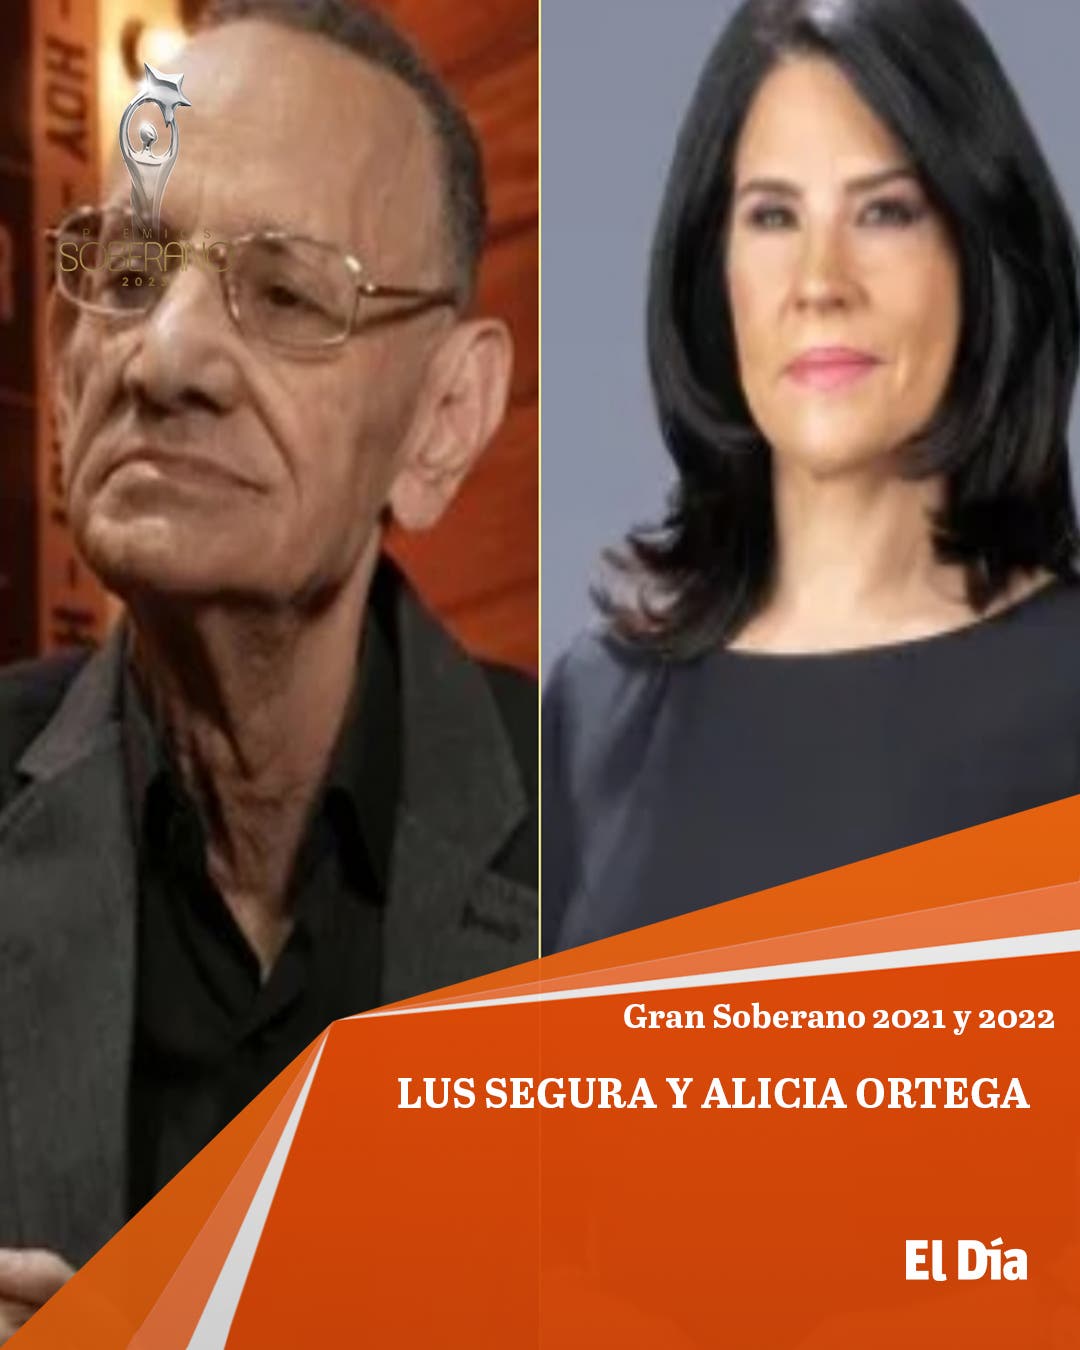 Luis Segura y Alicia Ortega ganan el Gran Soberano 2021 Y 2022